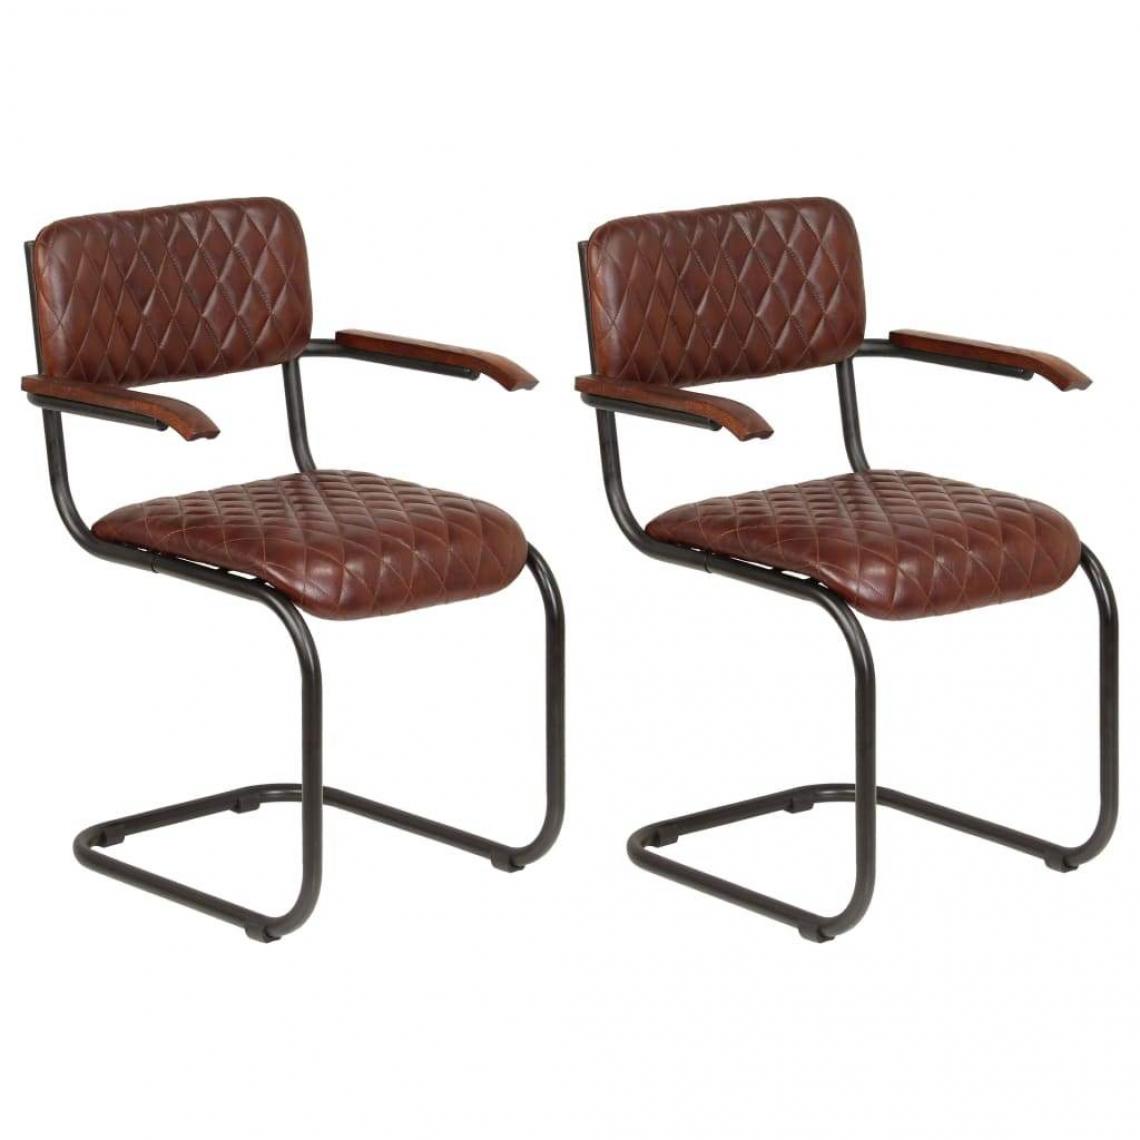 Decoshop26 - Lot de 2 chaises de salle à manger cuisine design vintage cuir véritable marron CDS020680 - Chaises